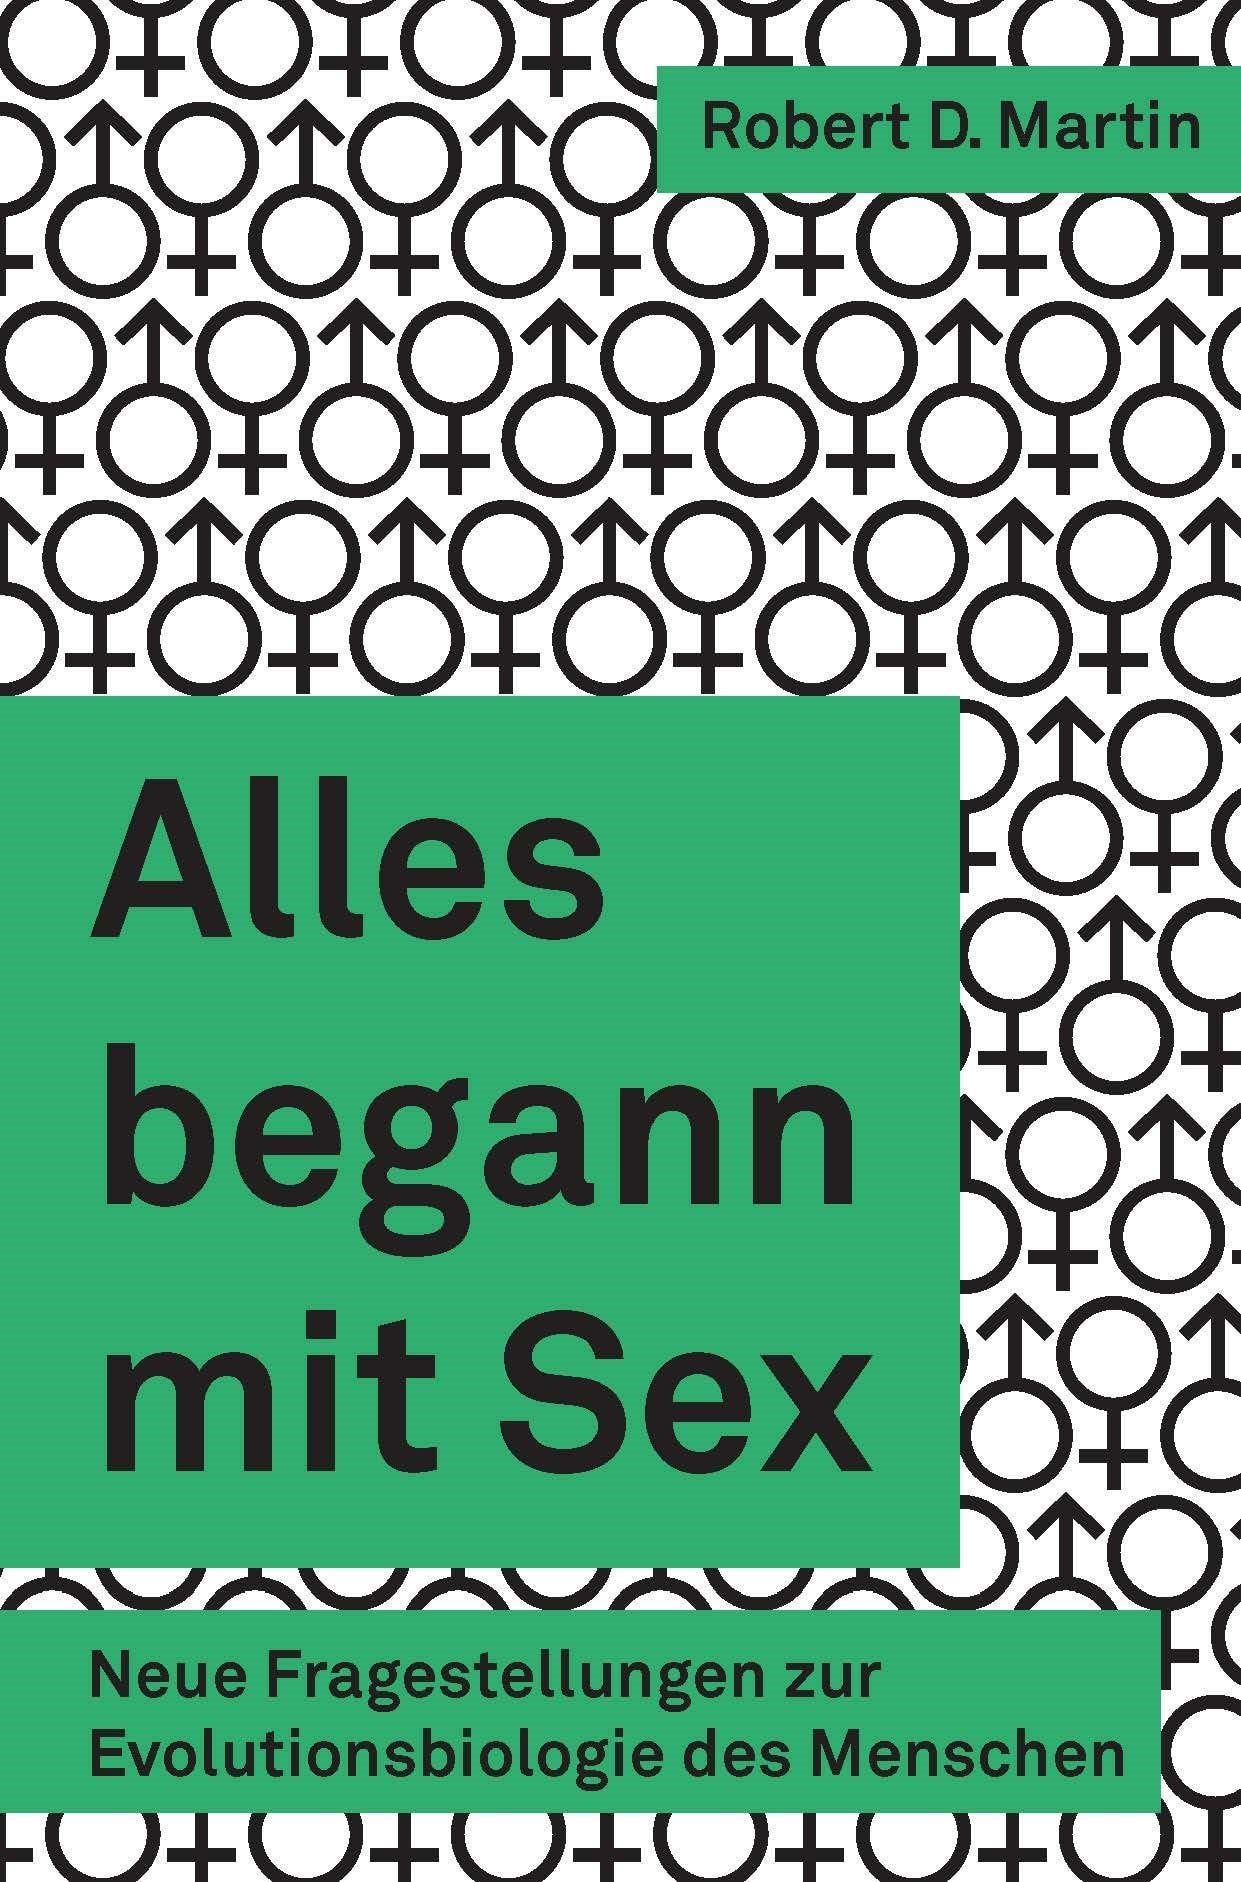 Buchkritik Zu Alles Begann Mit Sex Spektrum Der Wissenschaft